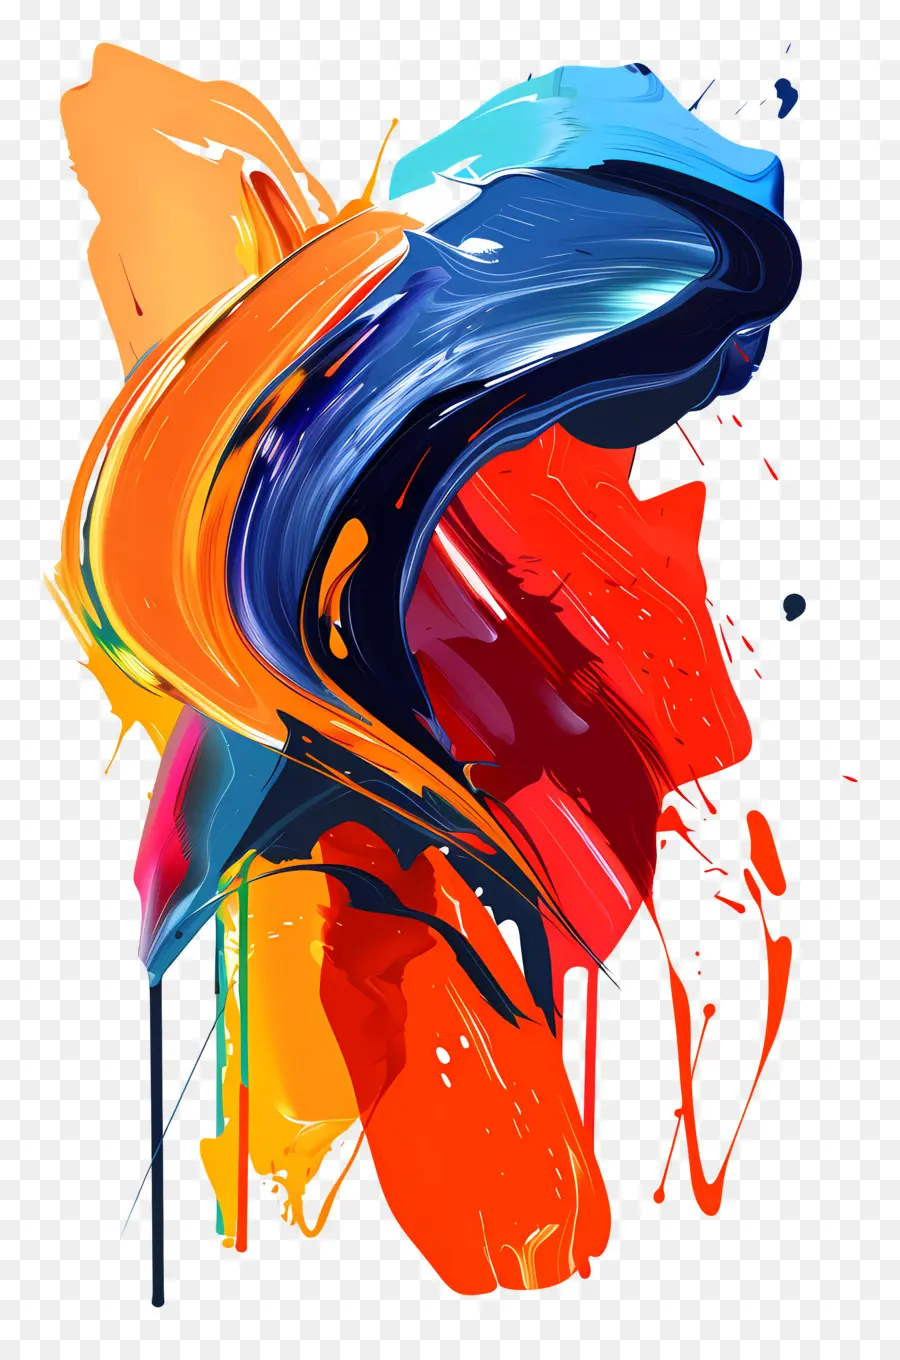 Farbfarbe abstrakte Kunst farbenfrohe Malerei lebendige Farben Pinselstriche - Dynamisches, lebendiges abstraktes Gemälde auf schwarzem Hintergrund